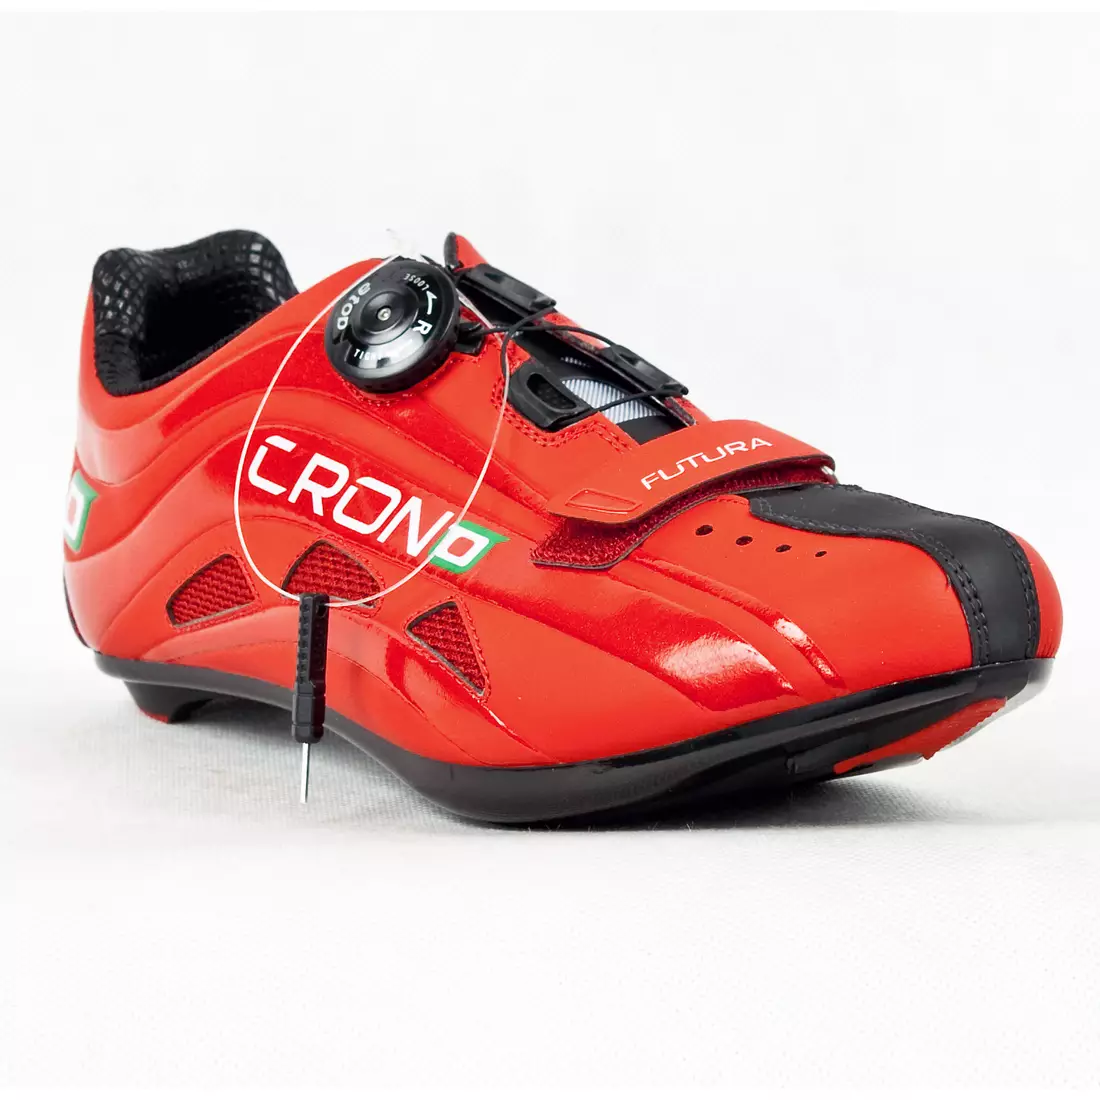 CRONO FUTURA NYLON - Rennradschuhe - Farbe: Rot